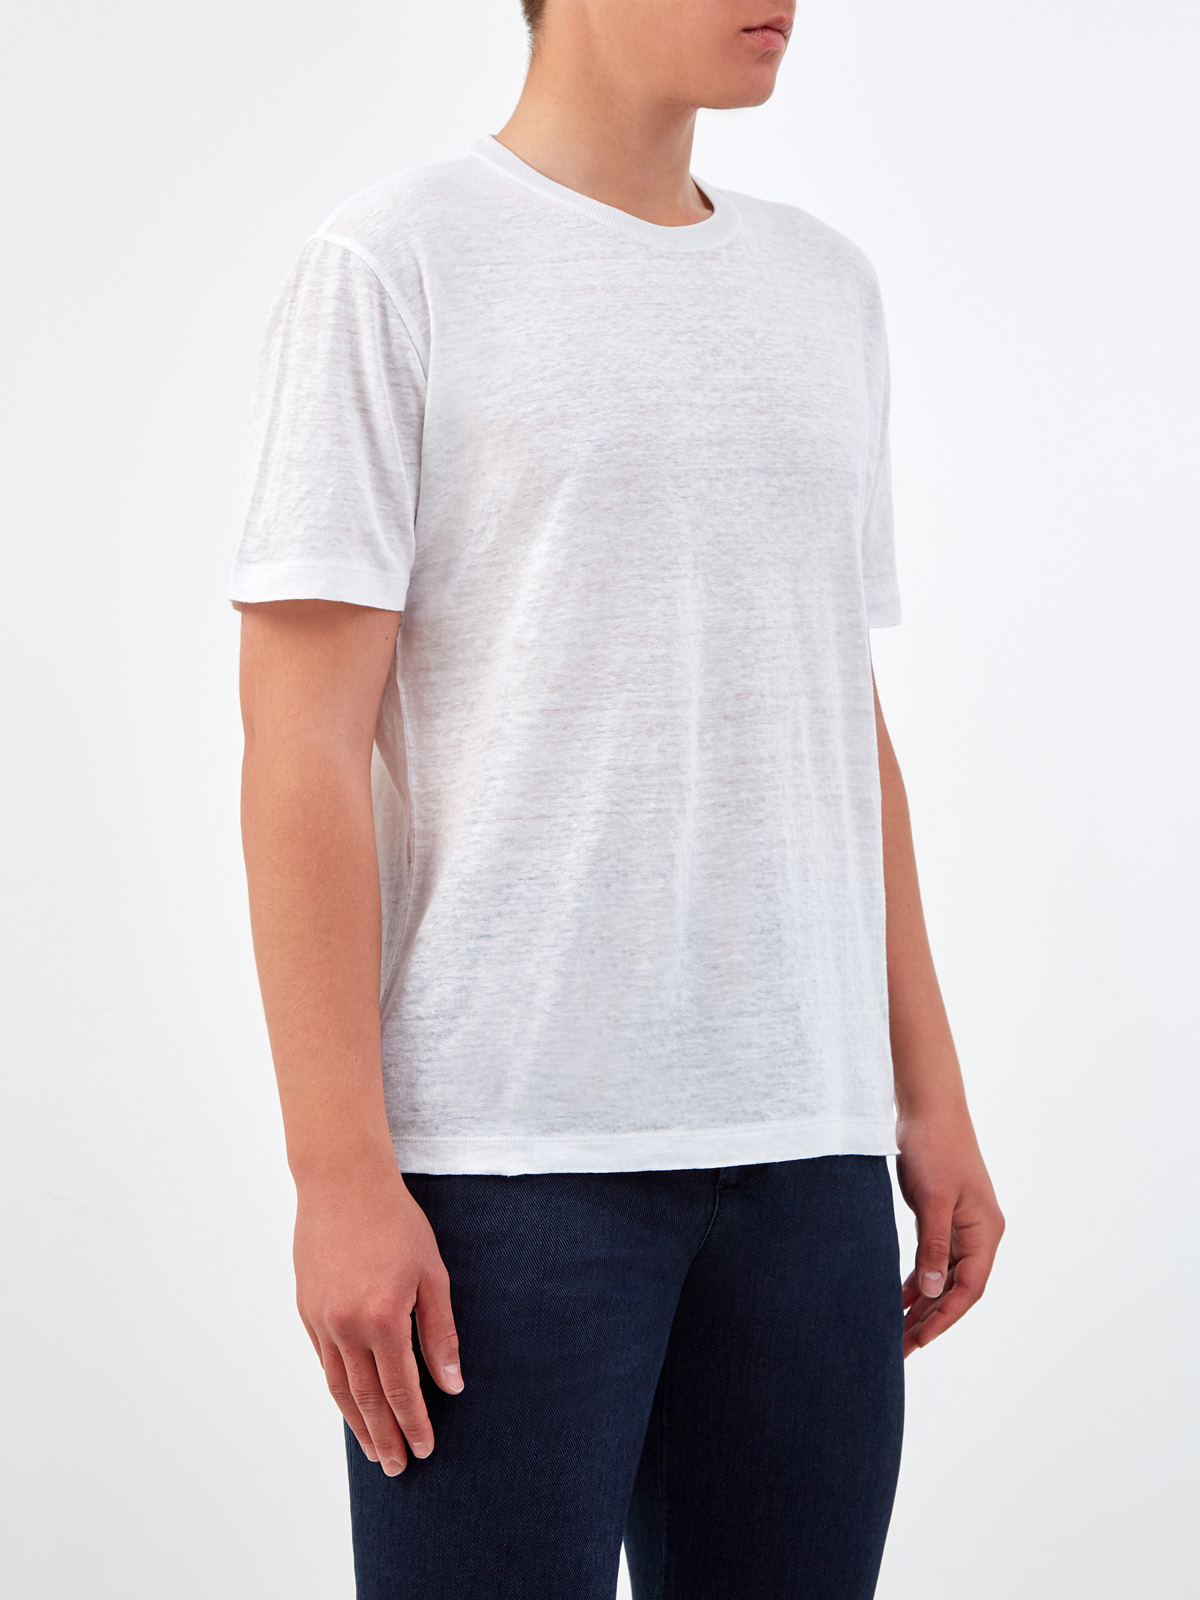 Легкая футболка из льняной ткани в меланжево-белом цвете CORTIGIANI, размер 50;52;56;58 - фото 3